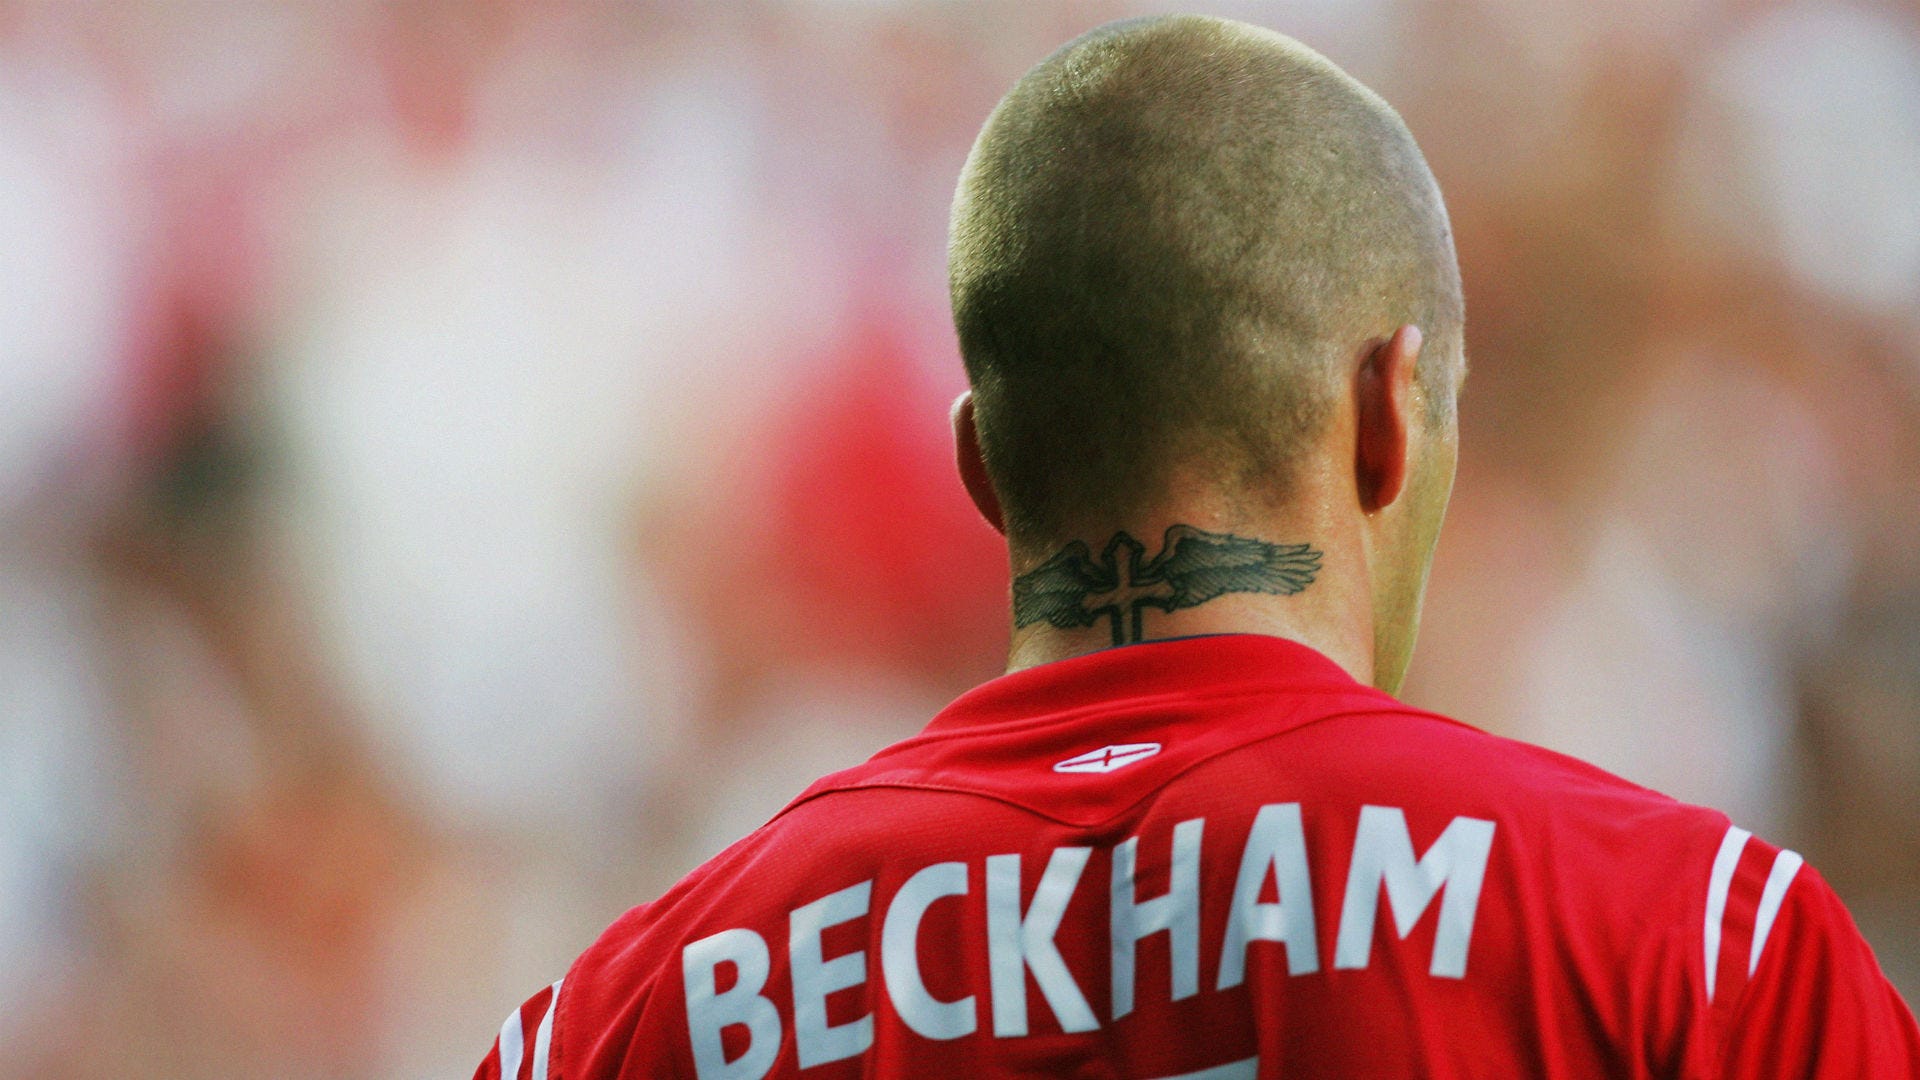 David Beckham gets another tattoo